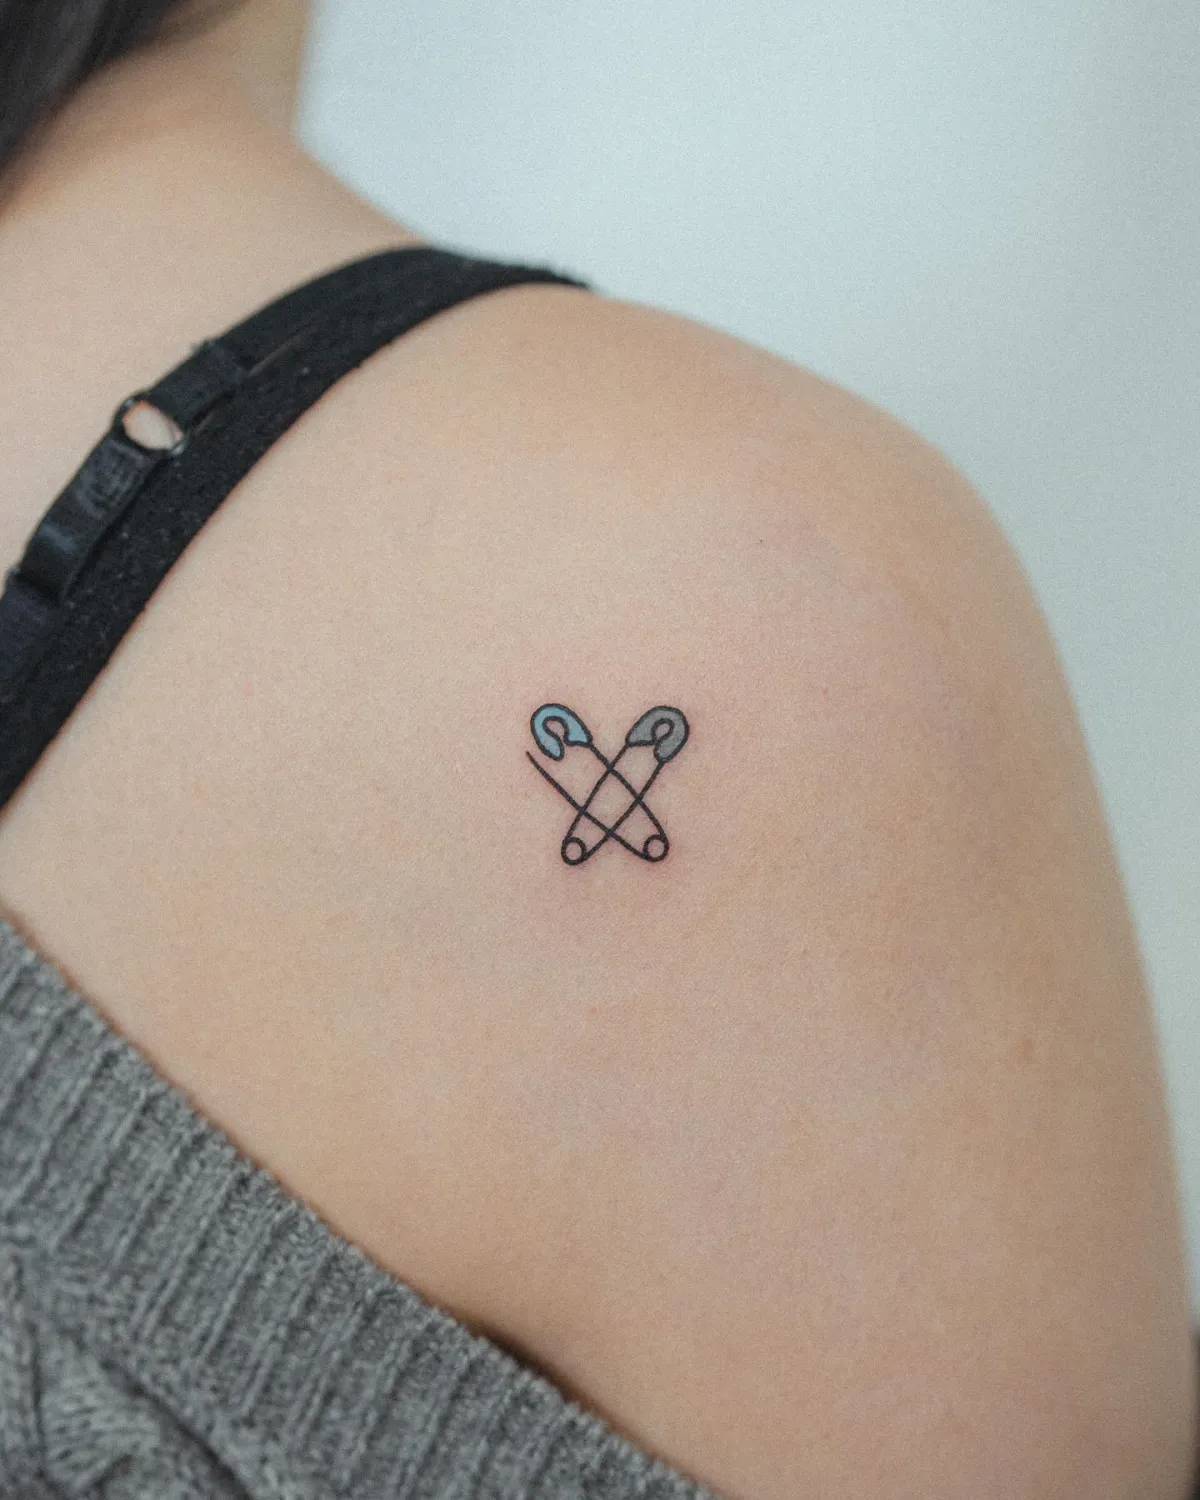 kleines tattoo schulter mit sicherheitsnadel symbol